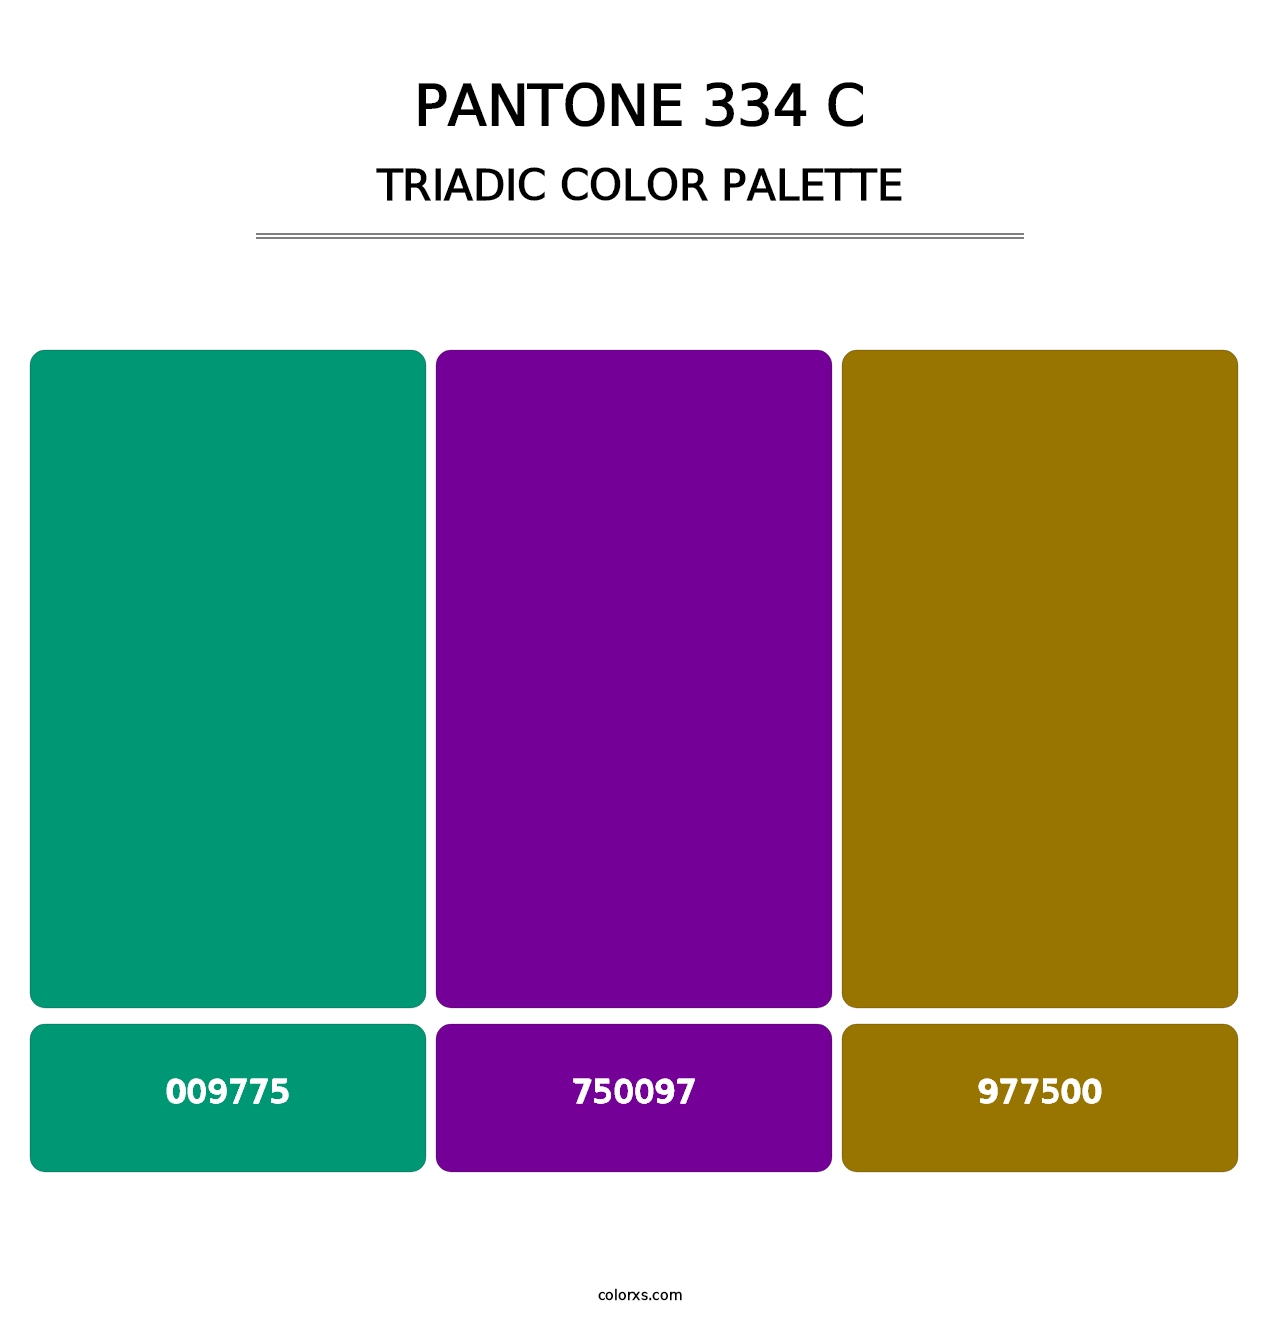 PANTONE 334 C - Triadic Color Palette